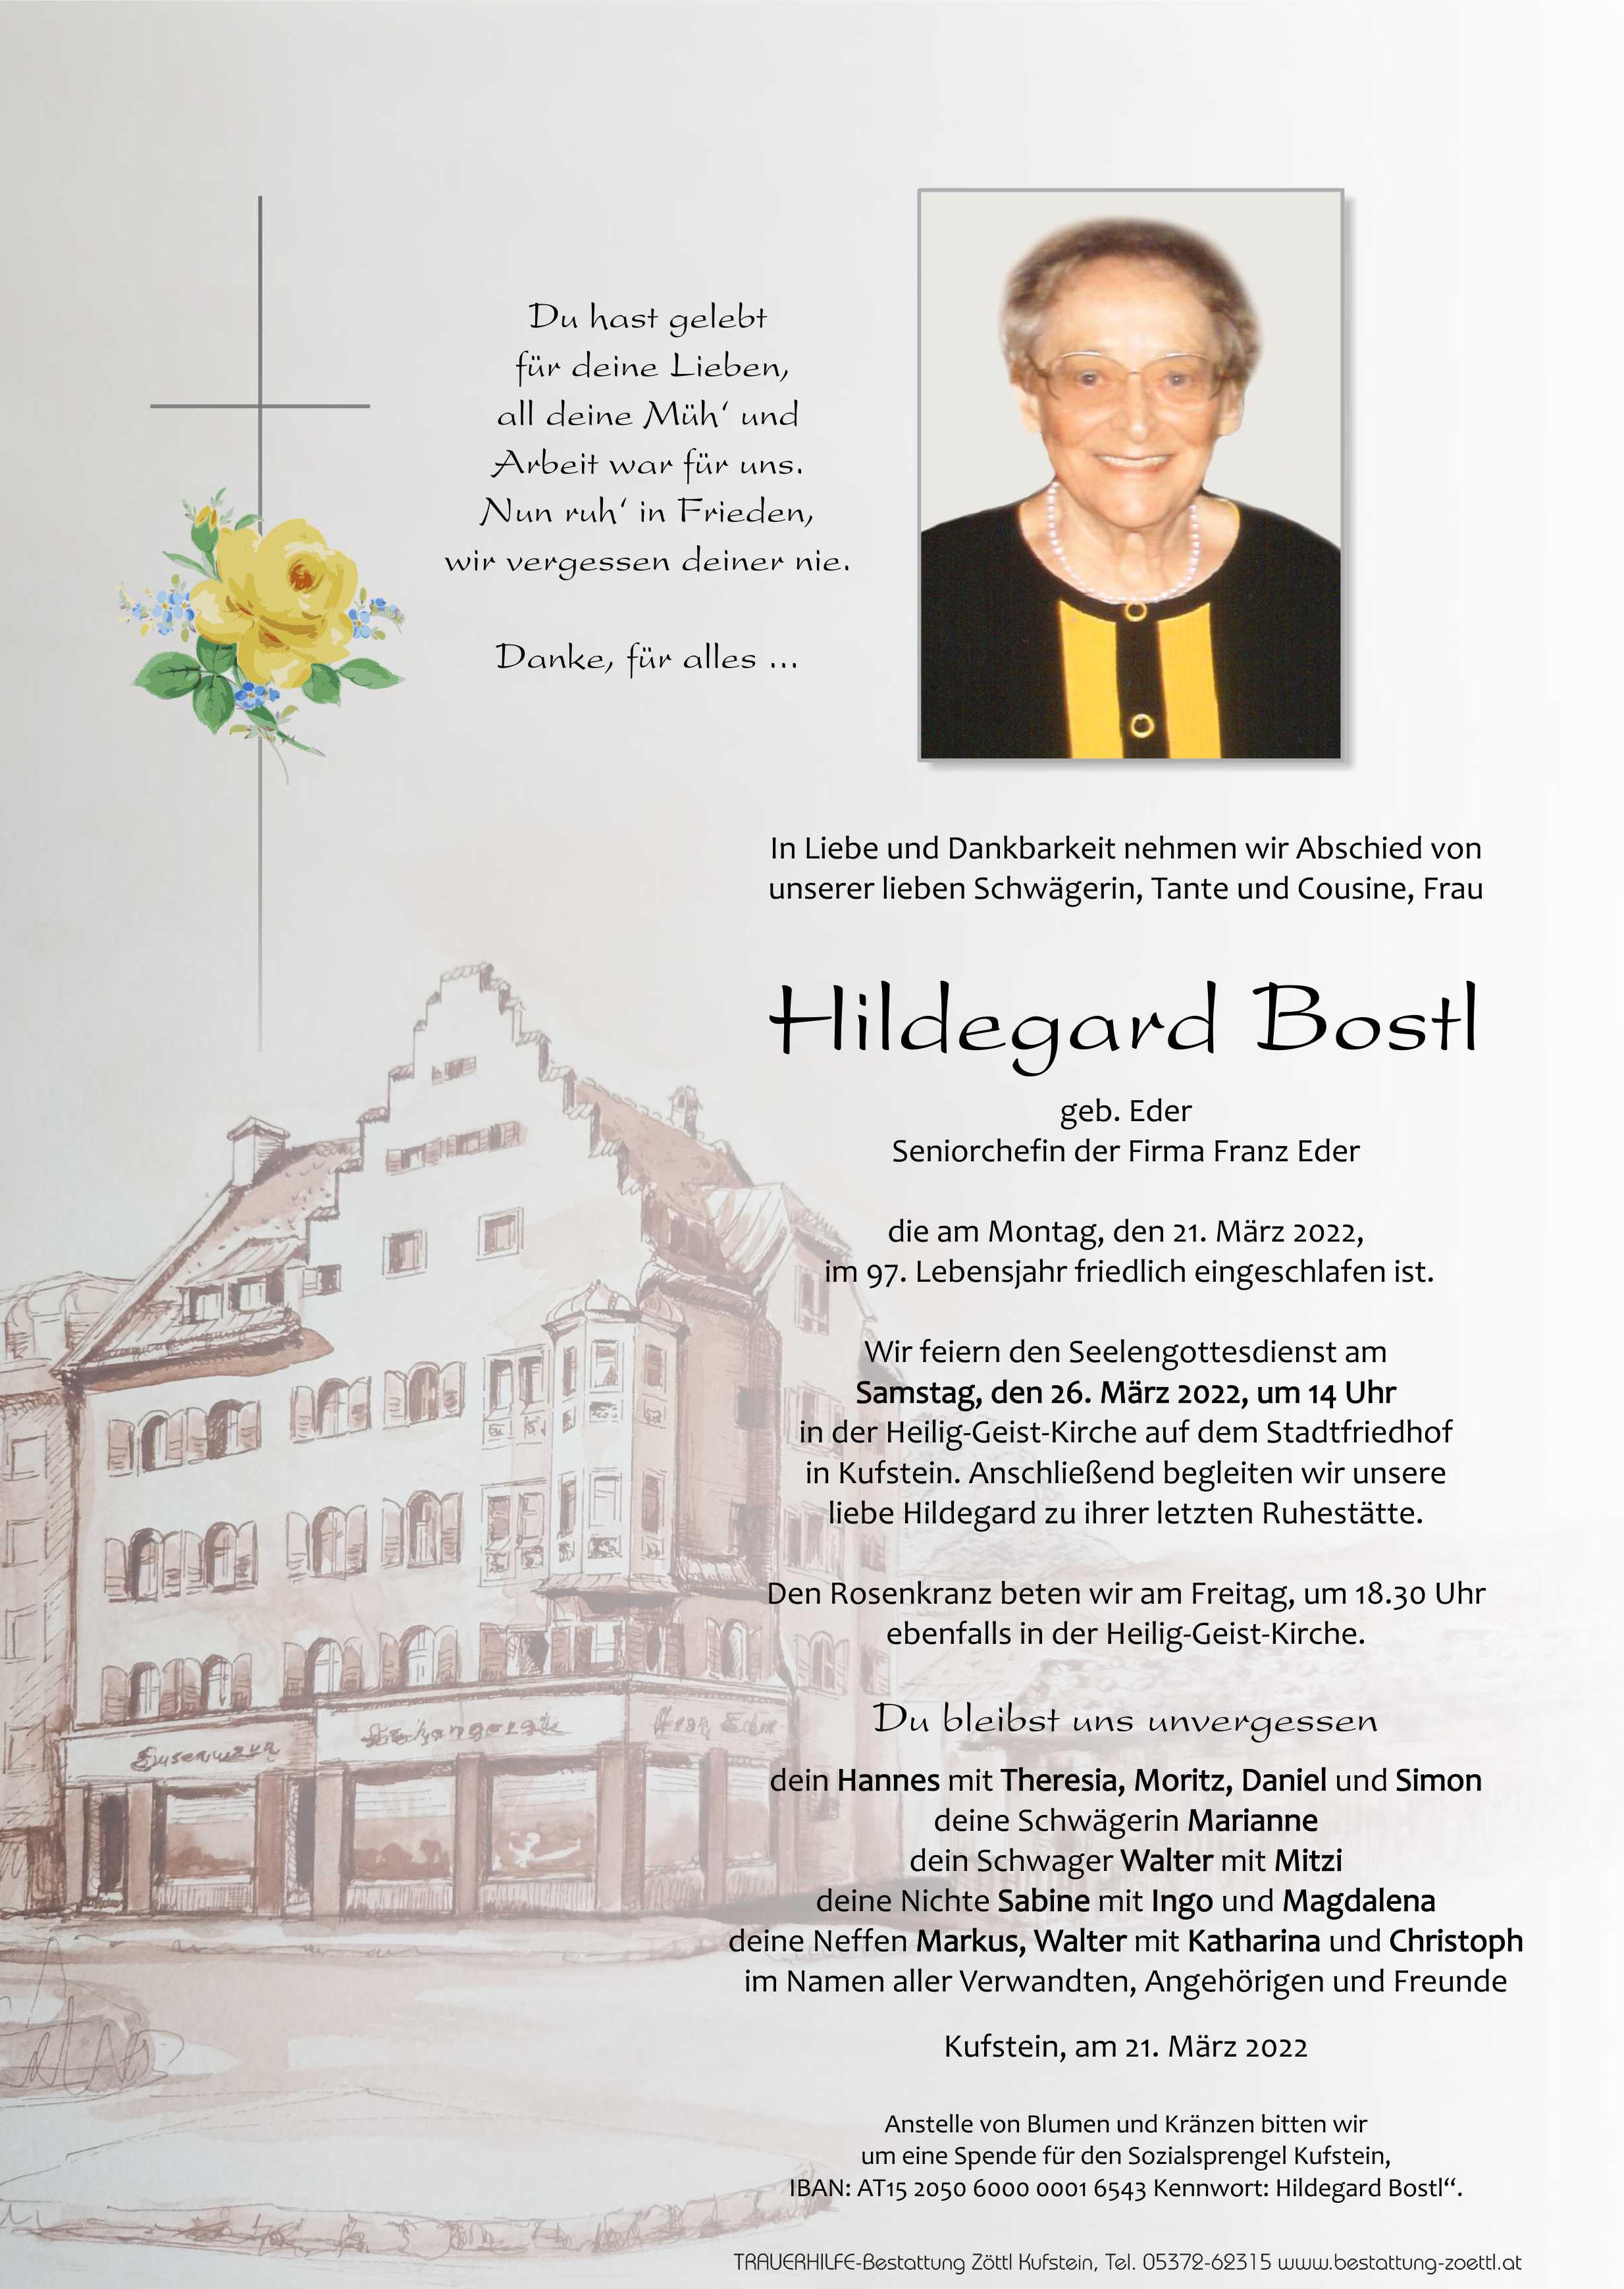 Hildegard Bostl